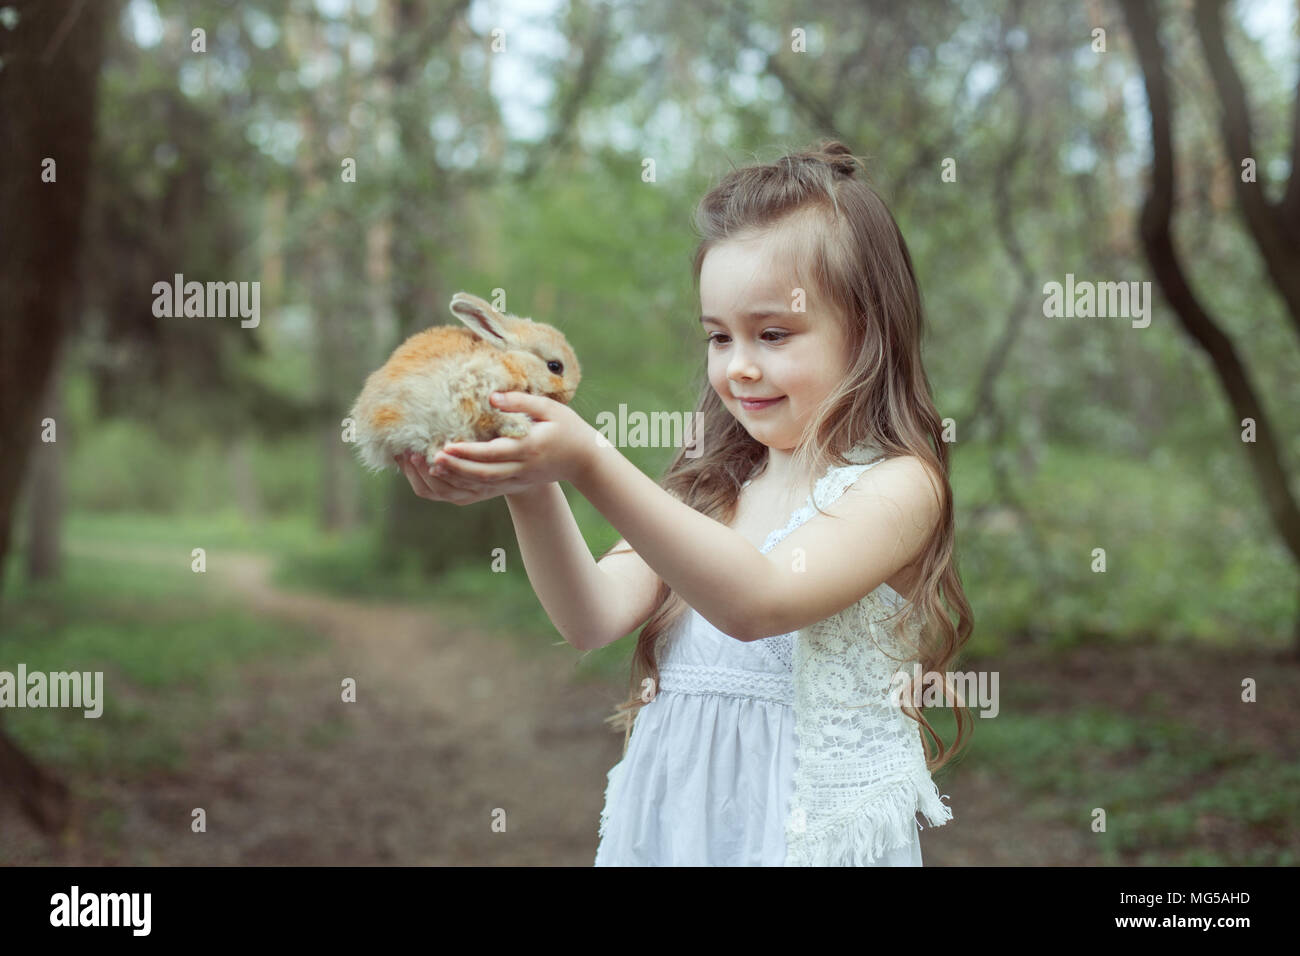 Kleines Mädchen steht im Wald und hält ein kleines Kaninchen in ihren Händen. Stockfoto